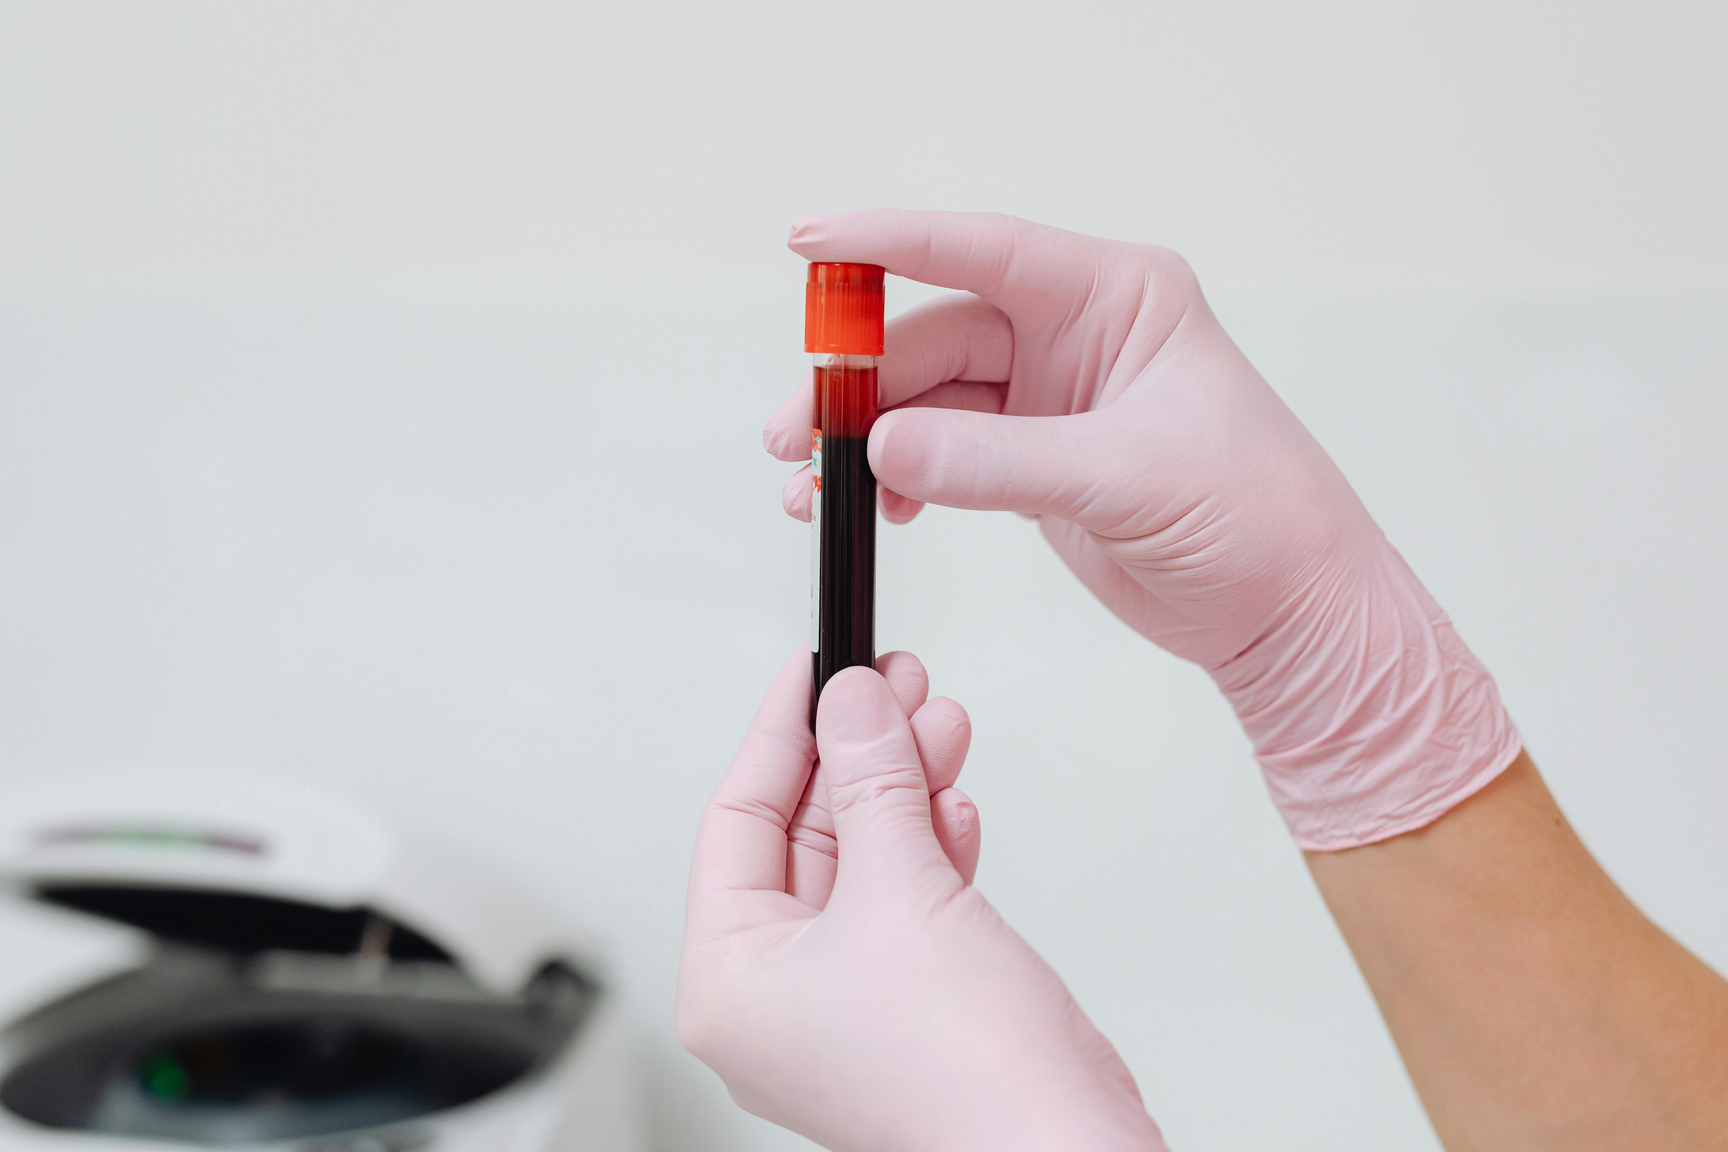 Науковці виявили генетичну залежність між результатами аналізу крові та психічними розладами